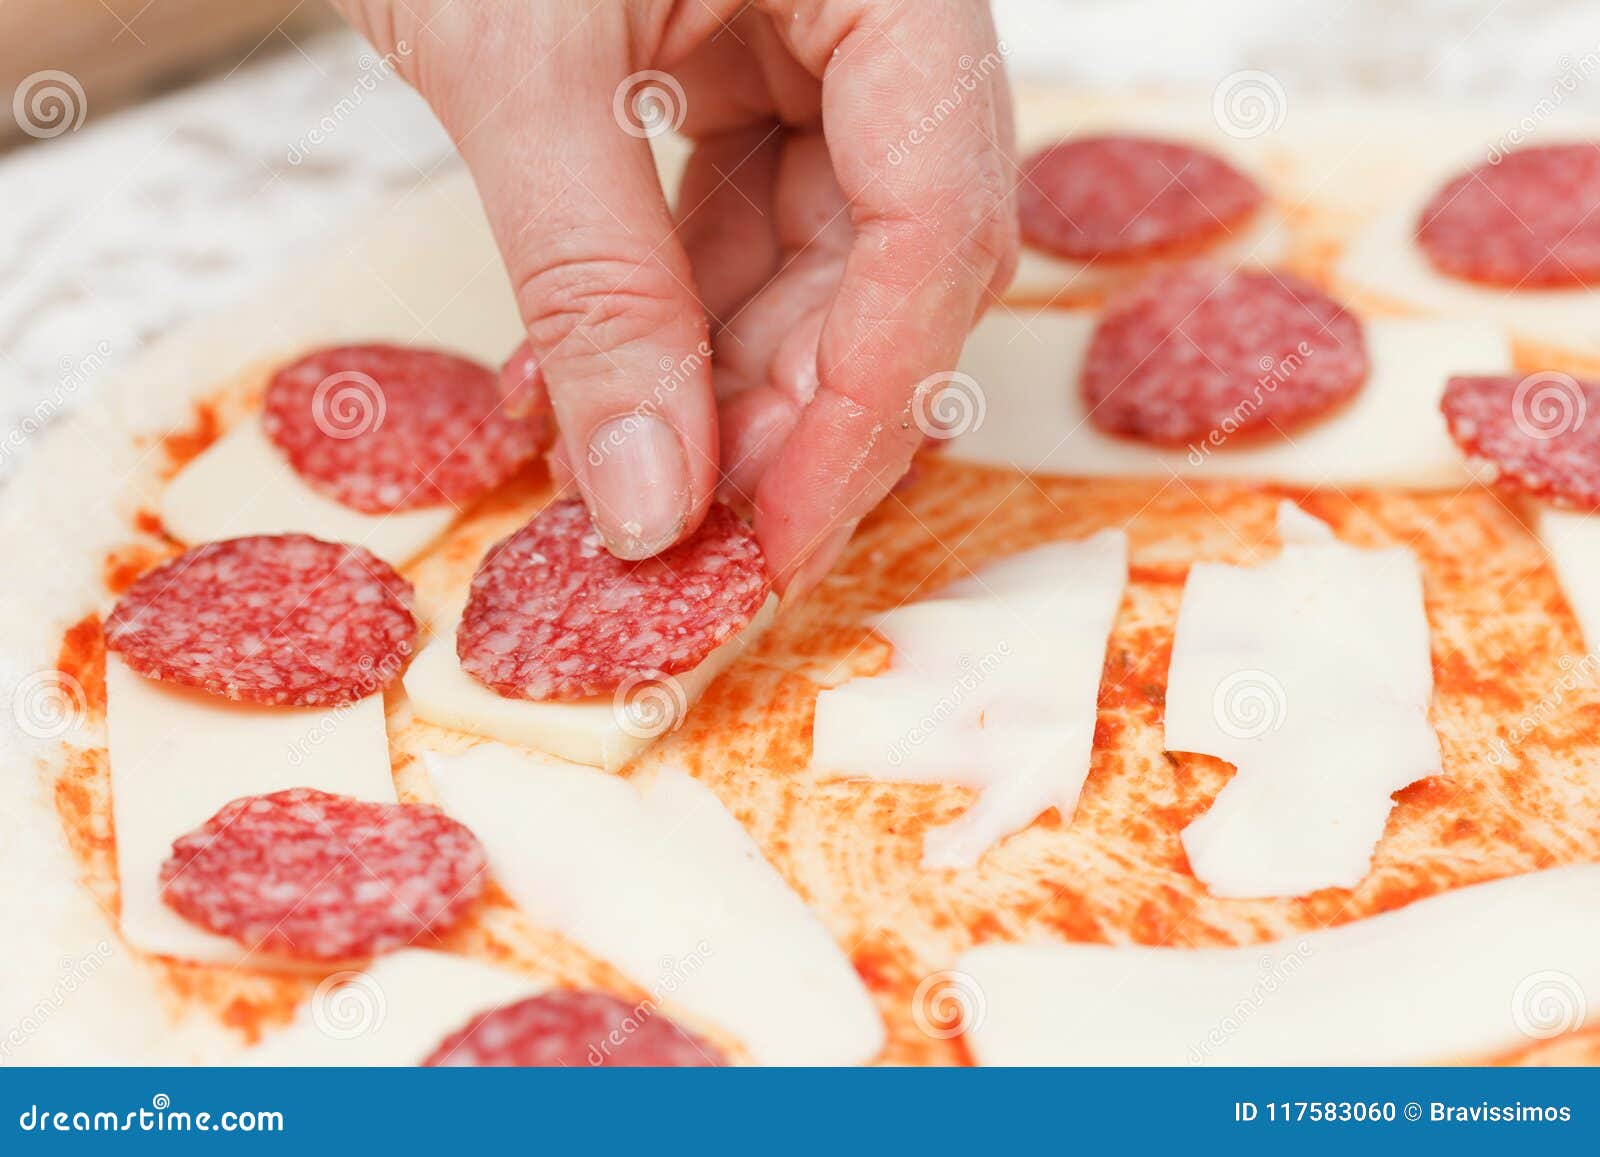 когда нужно класть сыр в пиццу в духовке фото 28